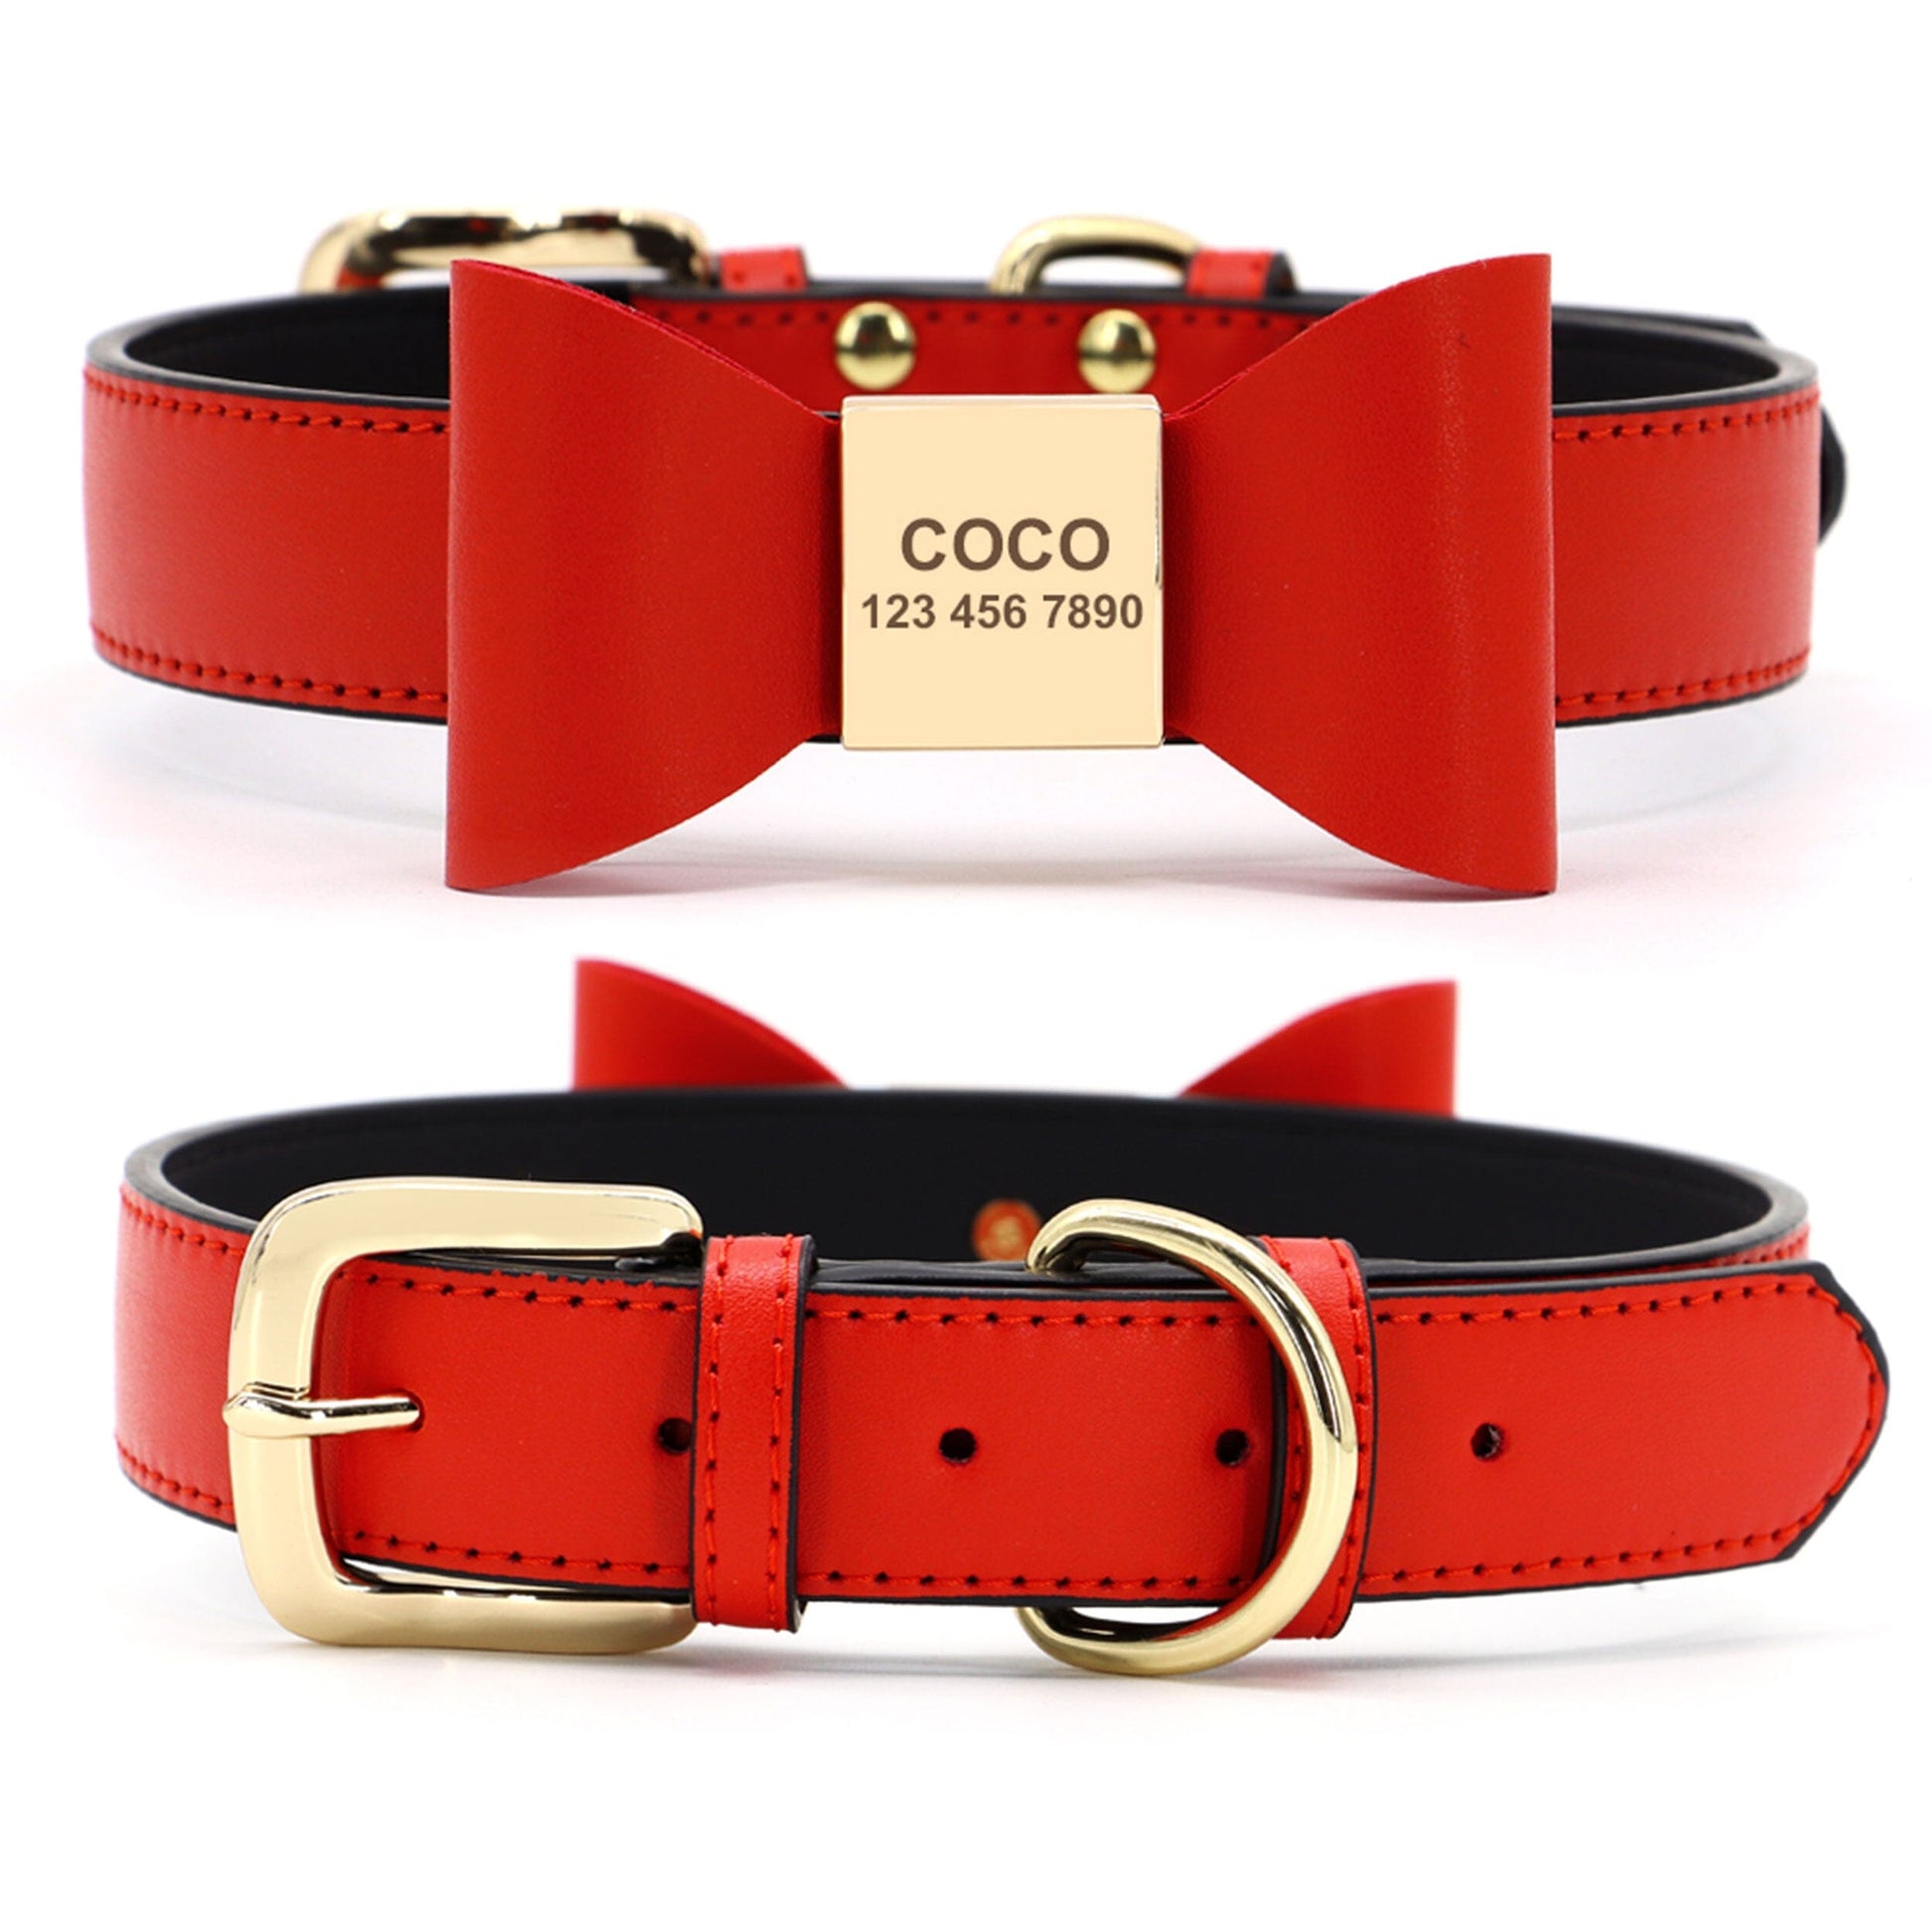 Premium Echtleder Hundehalsband mit Personalisierung | Bowknot Halsband Mein Shop Rot/Schwarz XS 